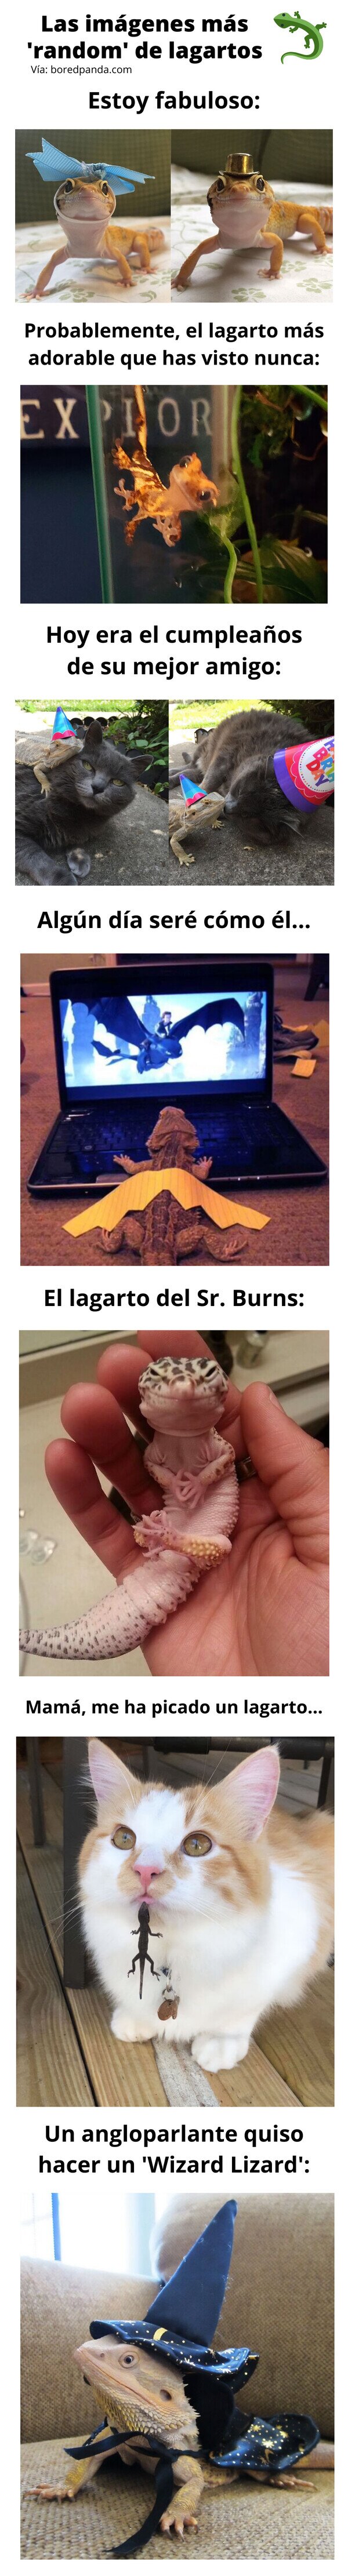 Meme_otros - Las imágenes más 'random' de lagartos